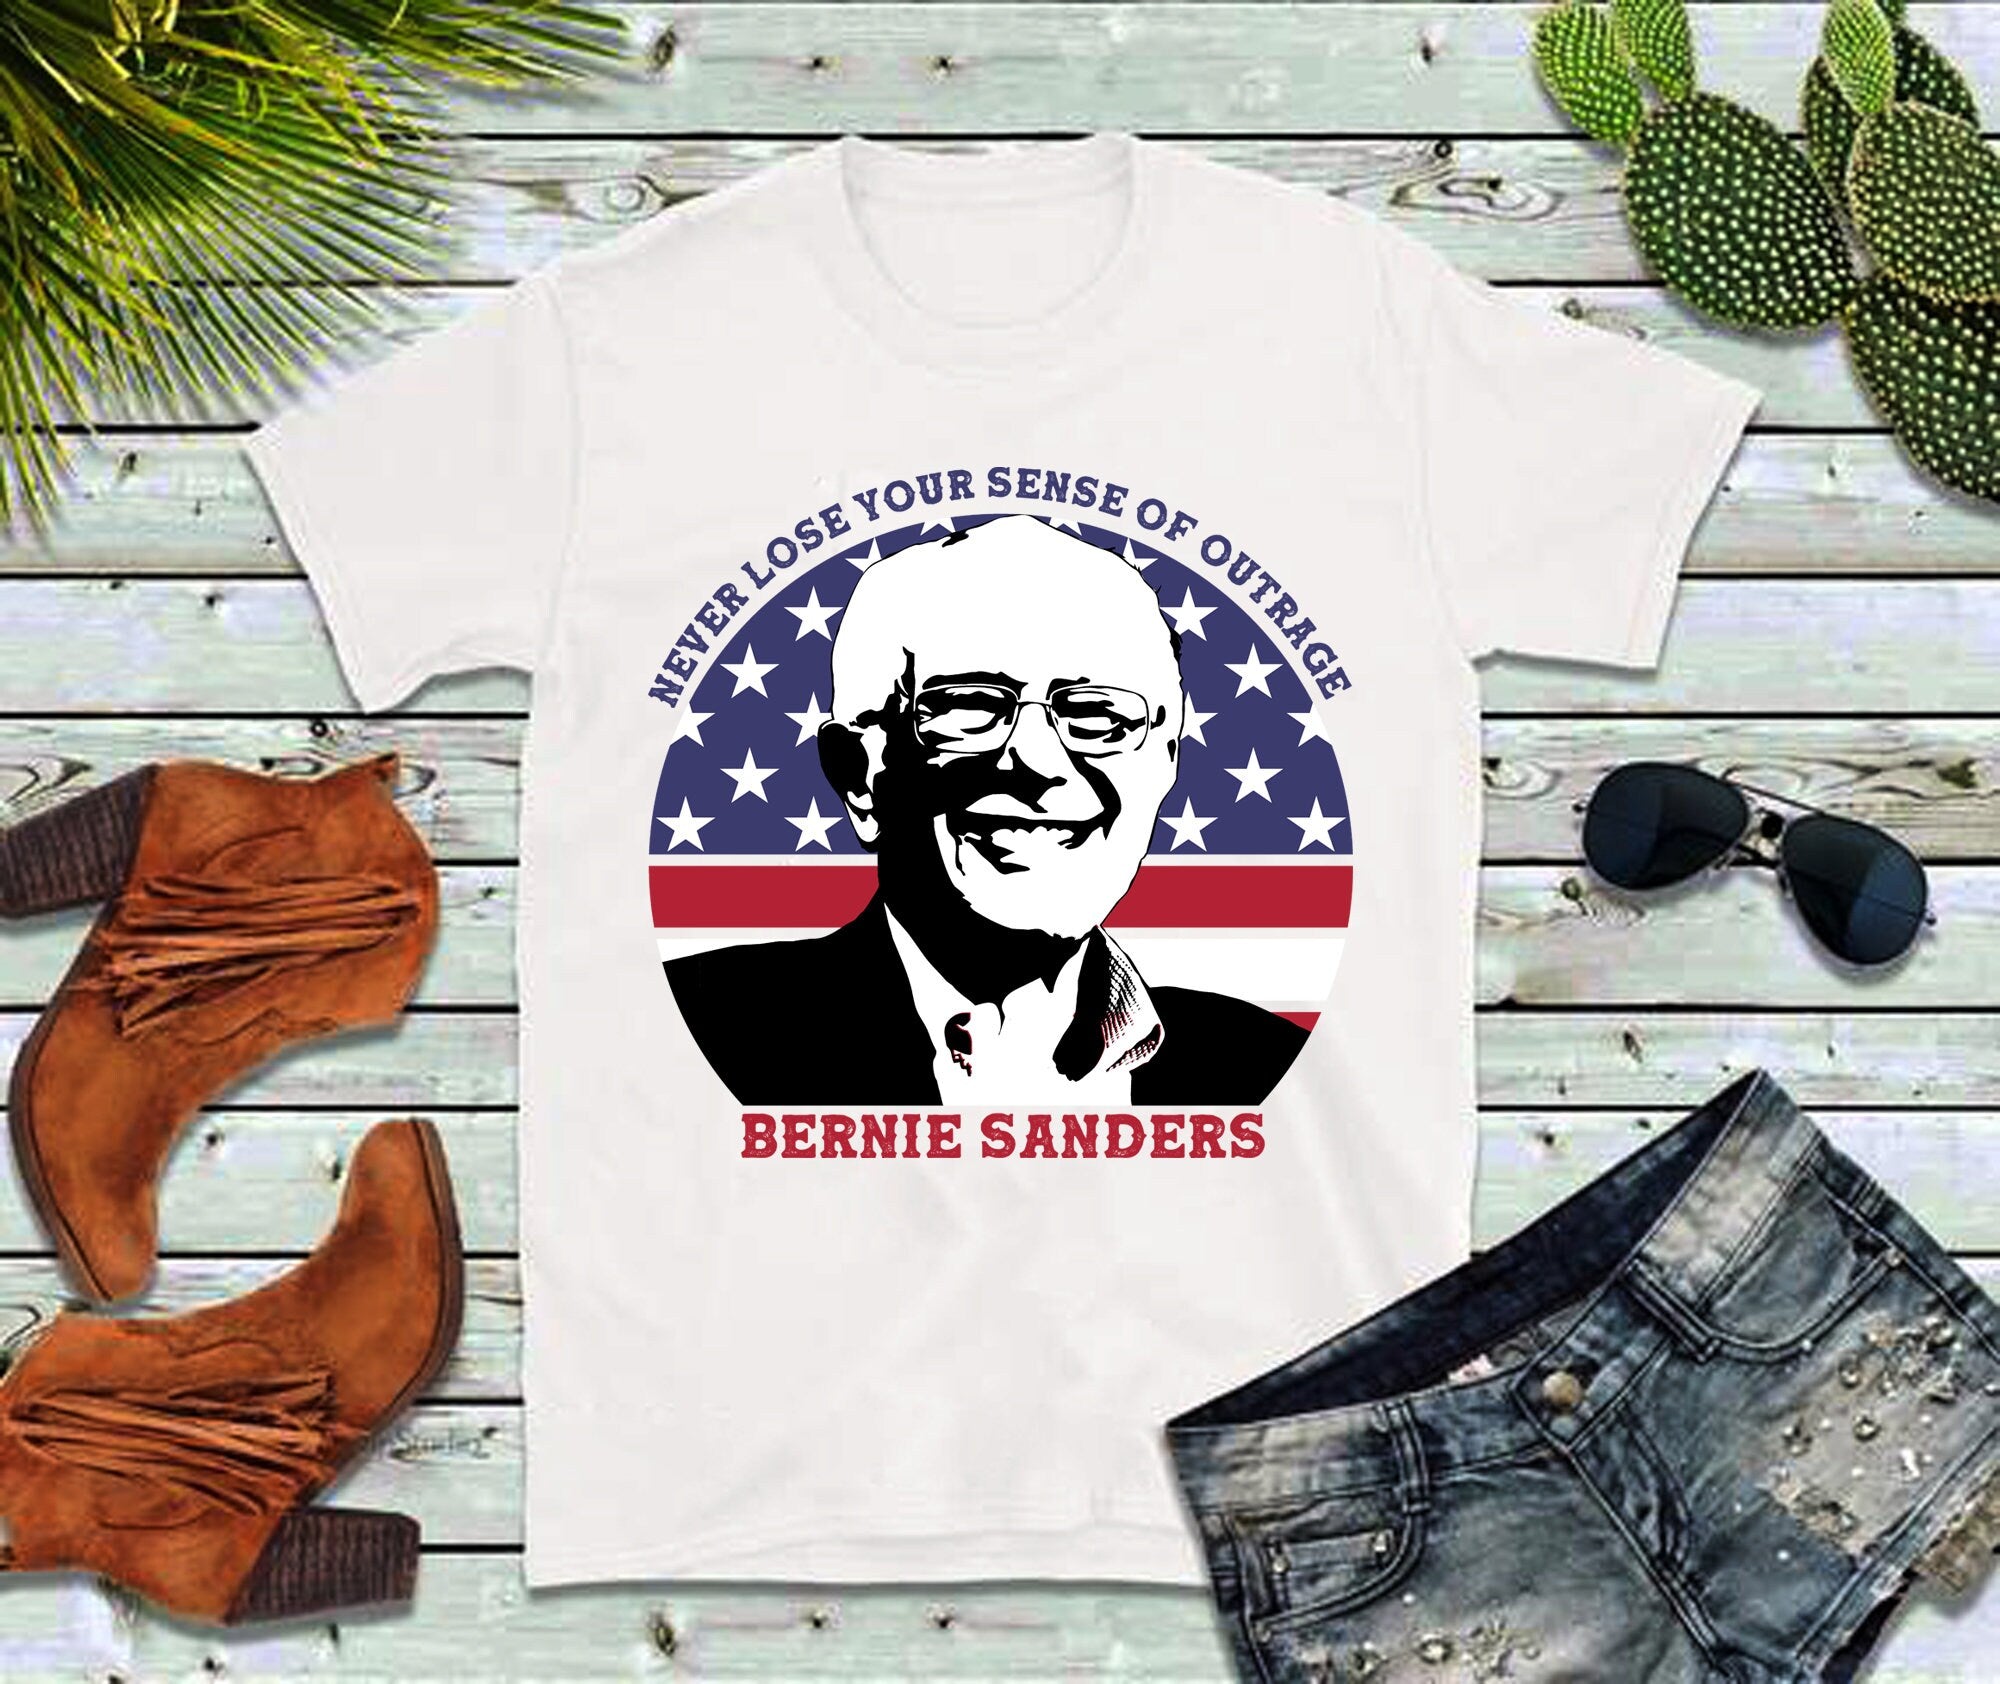 Huwag Mawawala ang Iyong Pagkagalit | Bernie Sanders | Circle American Flag T-Shirts - plusminusco.com